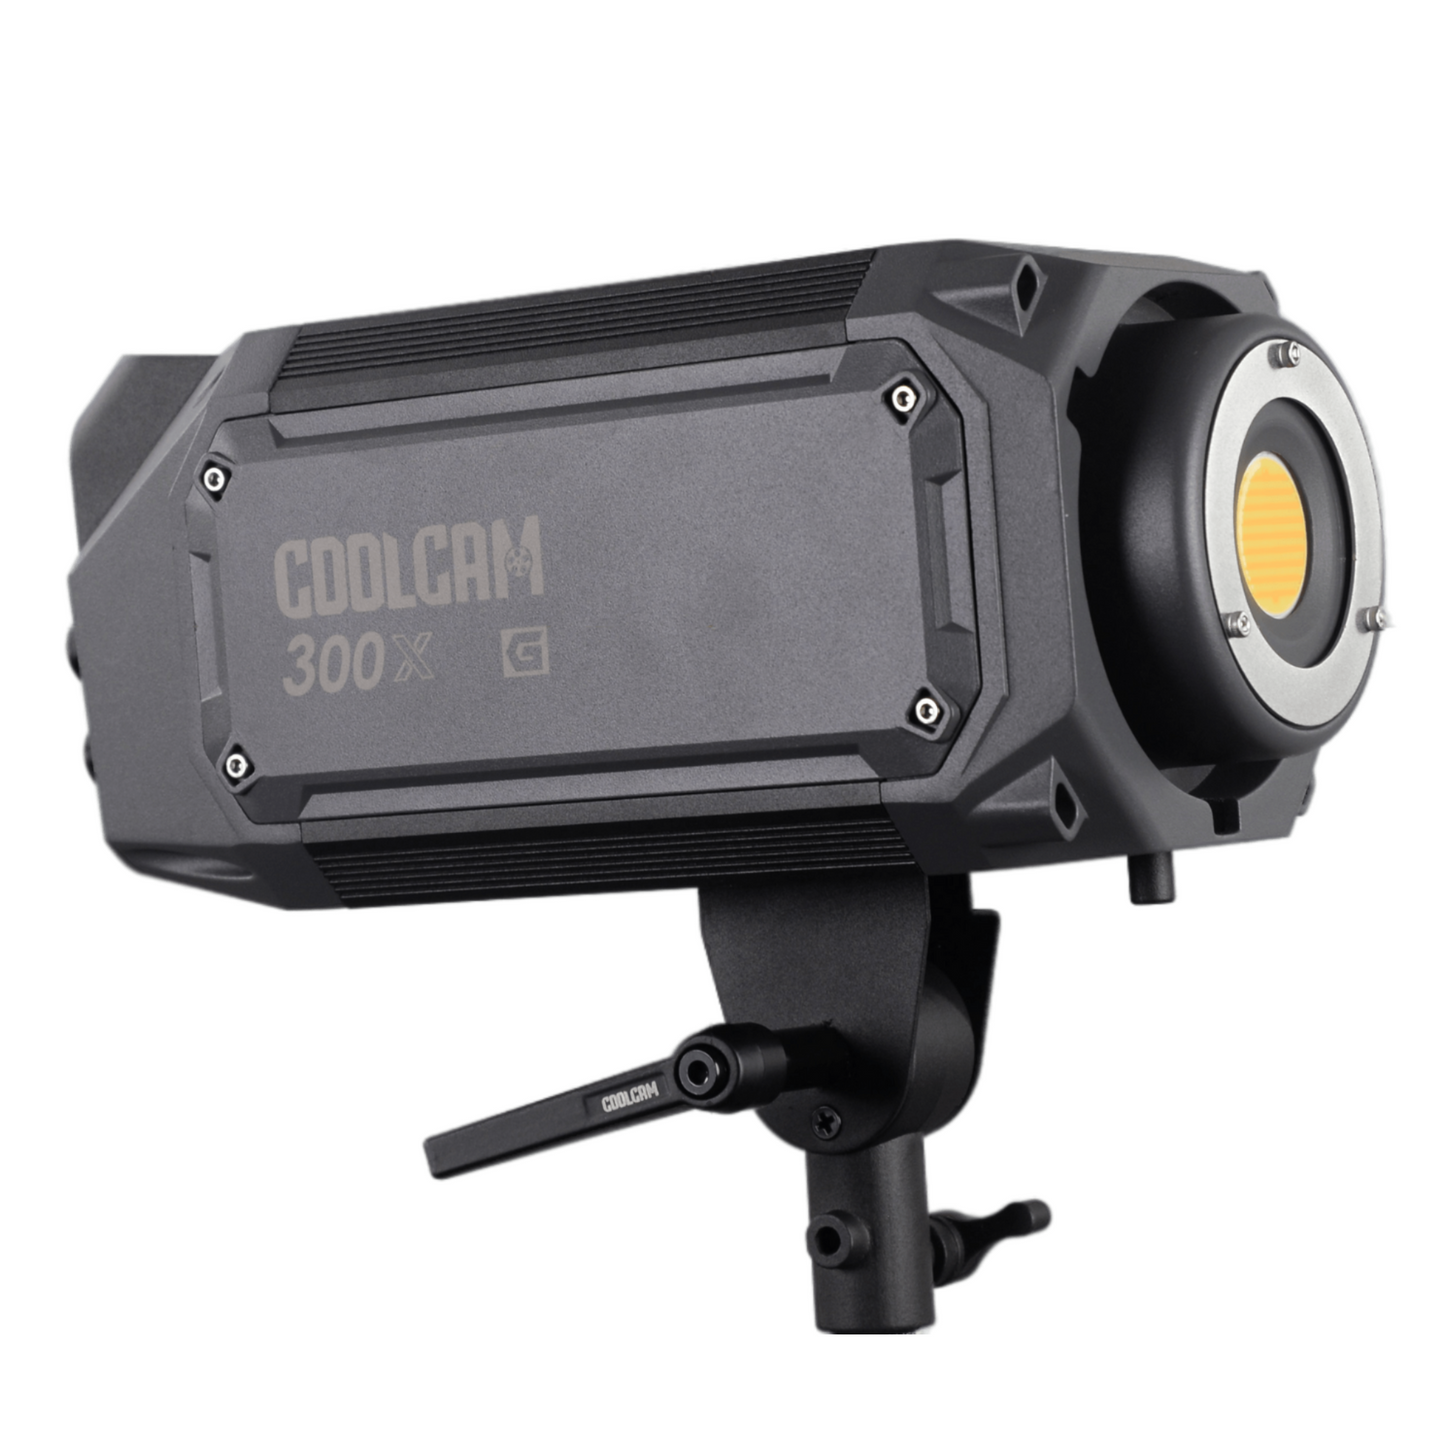 LS Coolcam 300X Bicolor Luz de relleno profesional estilo monolight Alto brillo